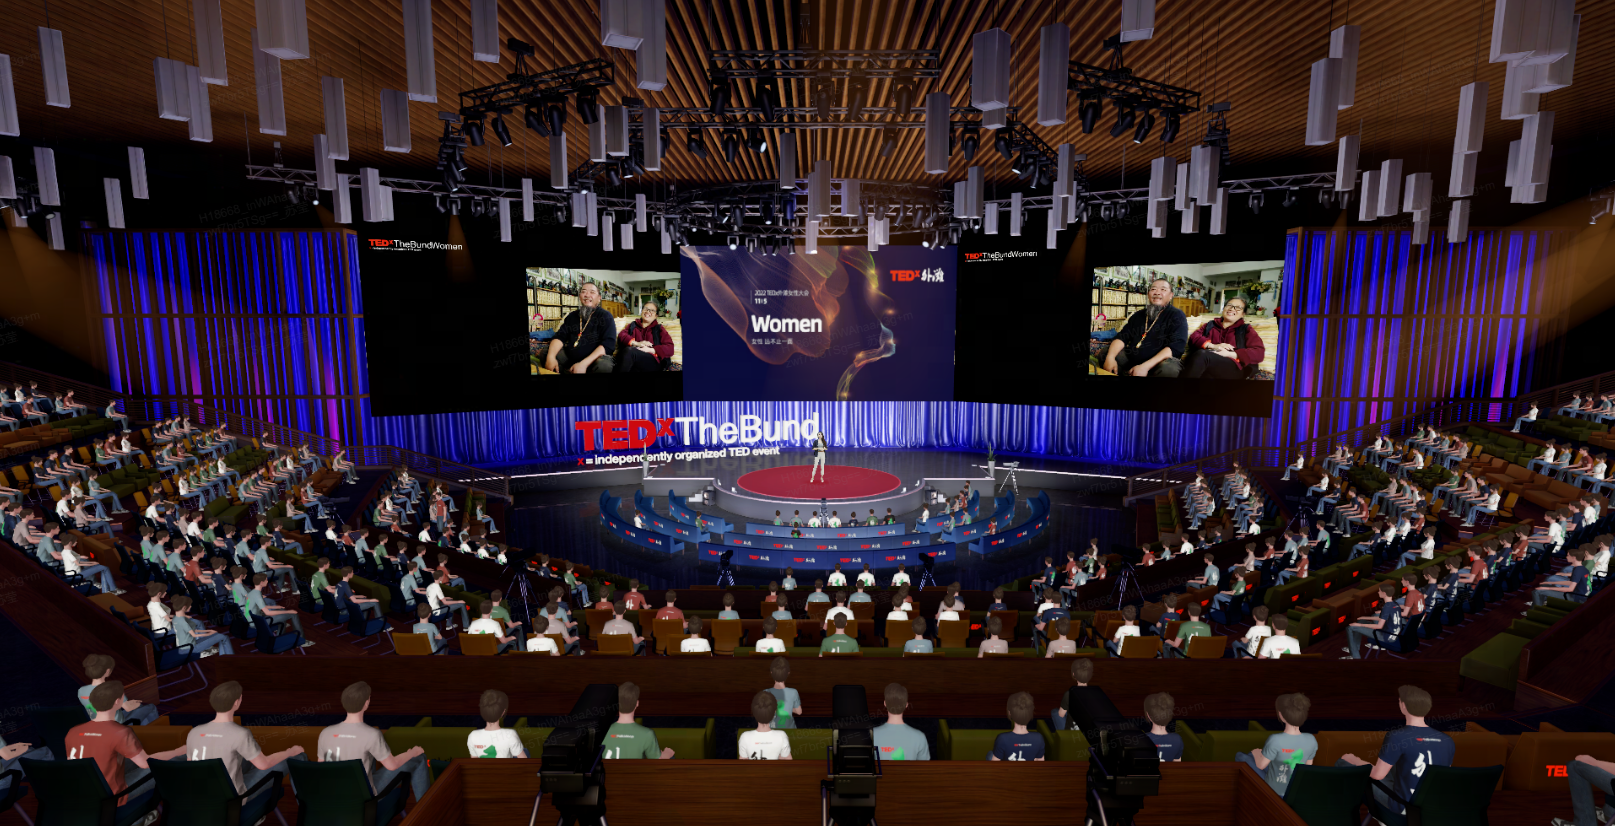 图片展示了一个TEDx活动现场，演讲者站在中心舞台上，观众们坐在周围聆听，场馆内气氛庄重而专注。